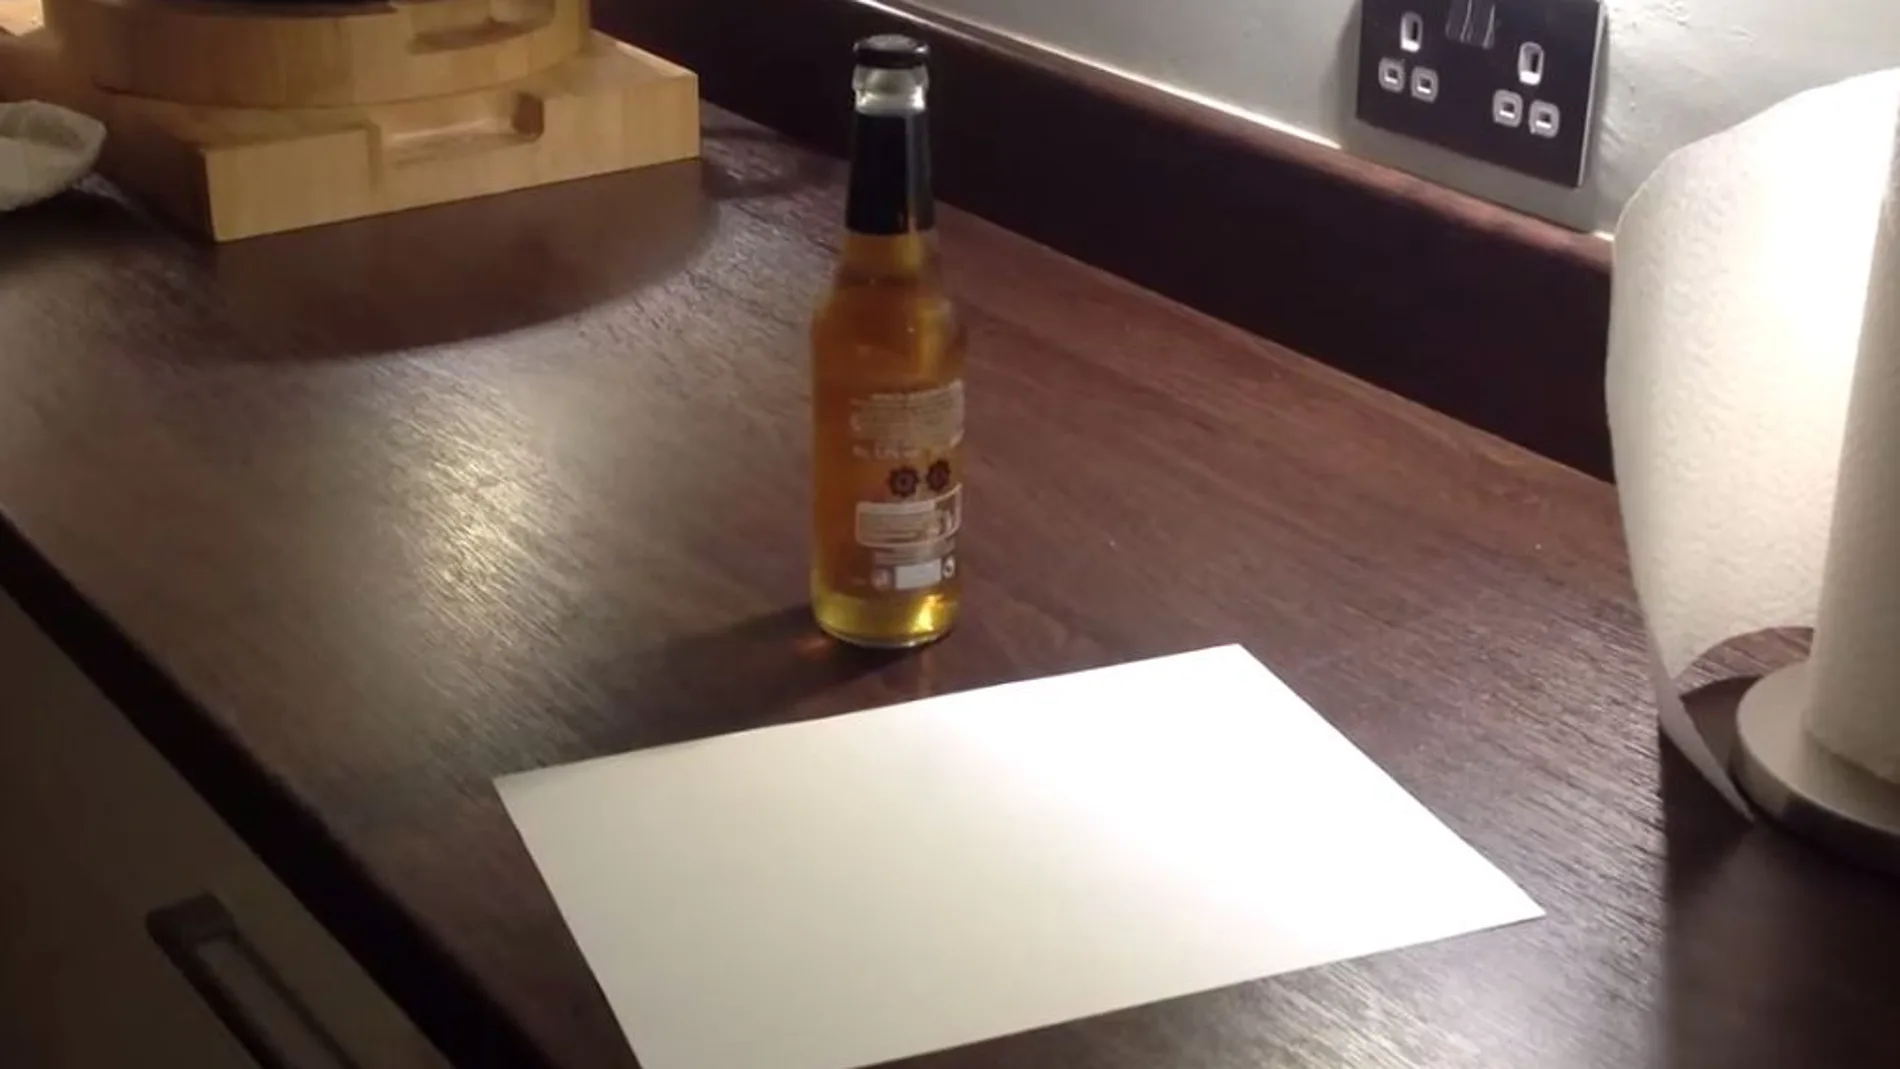 Cómo abrir un botellín de cerveza sólo con una hoja de papel